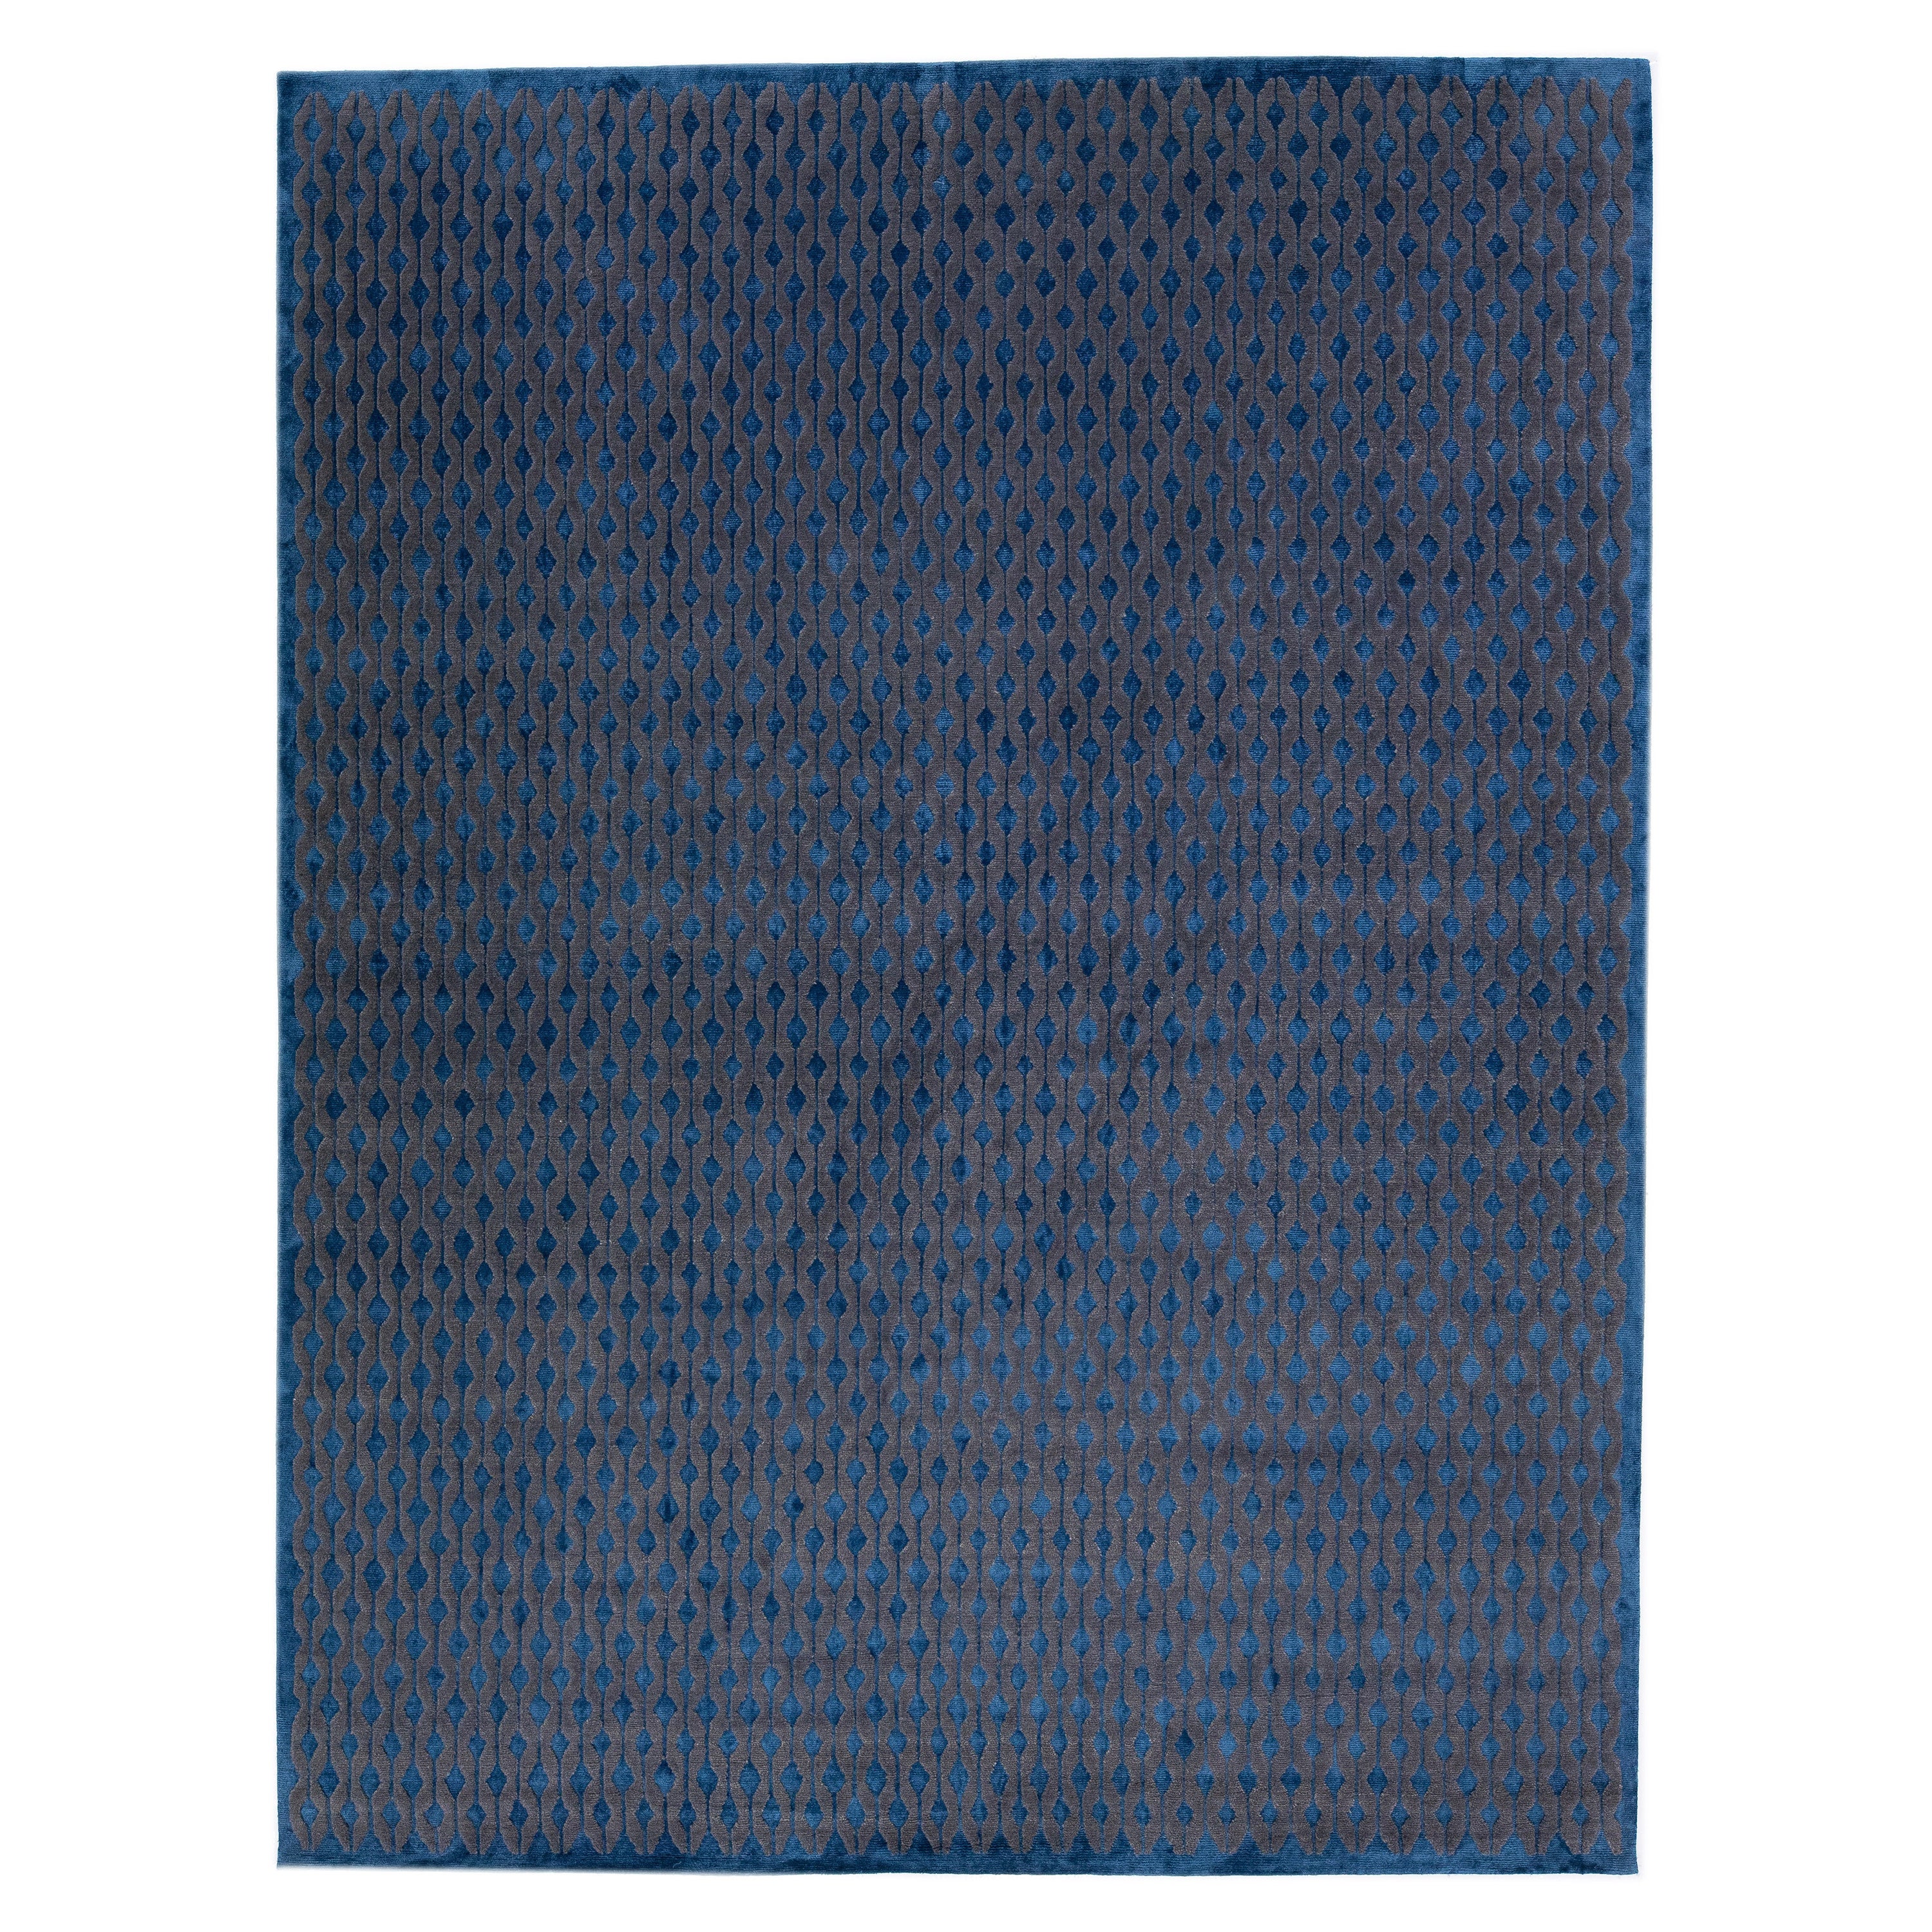 Tapis tibétain moderne géométrique en laine et soie fait à la main avec un champ de couleurs bleues